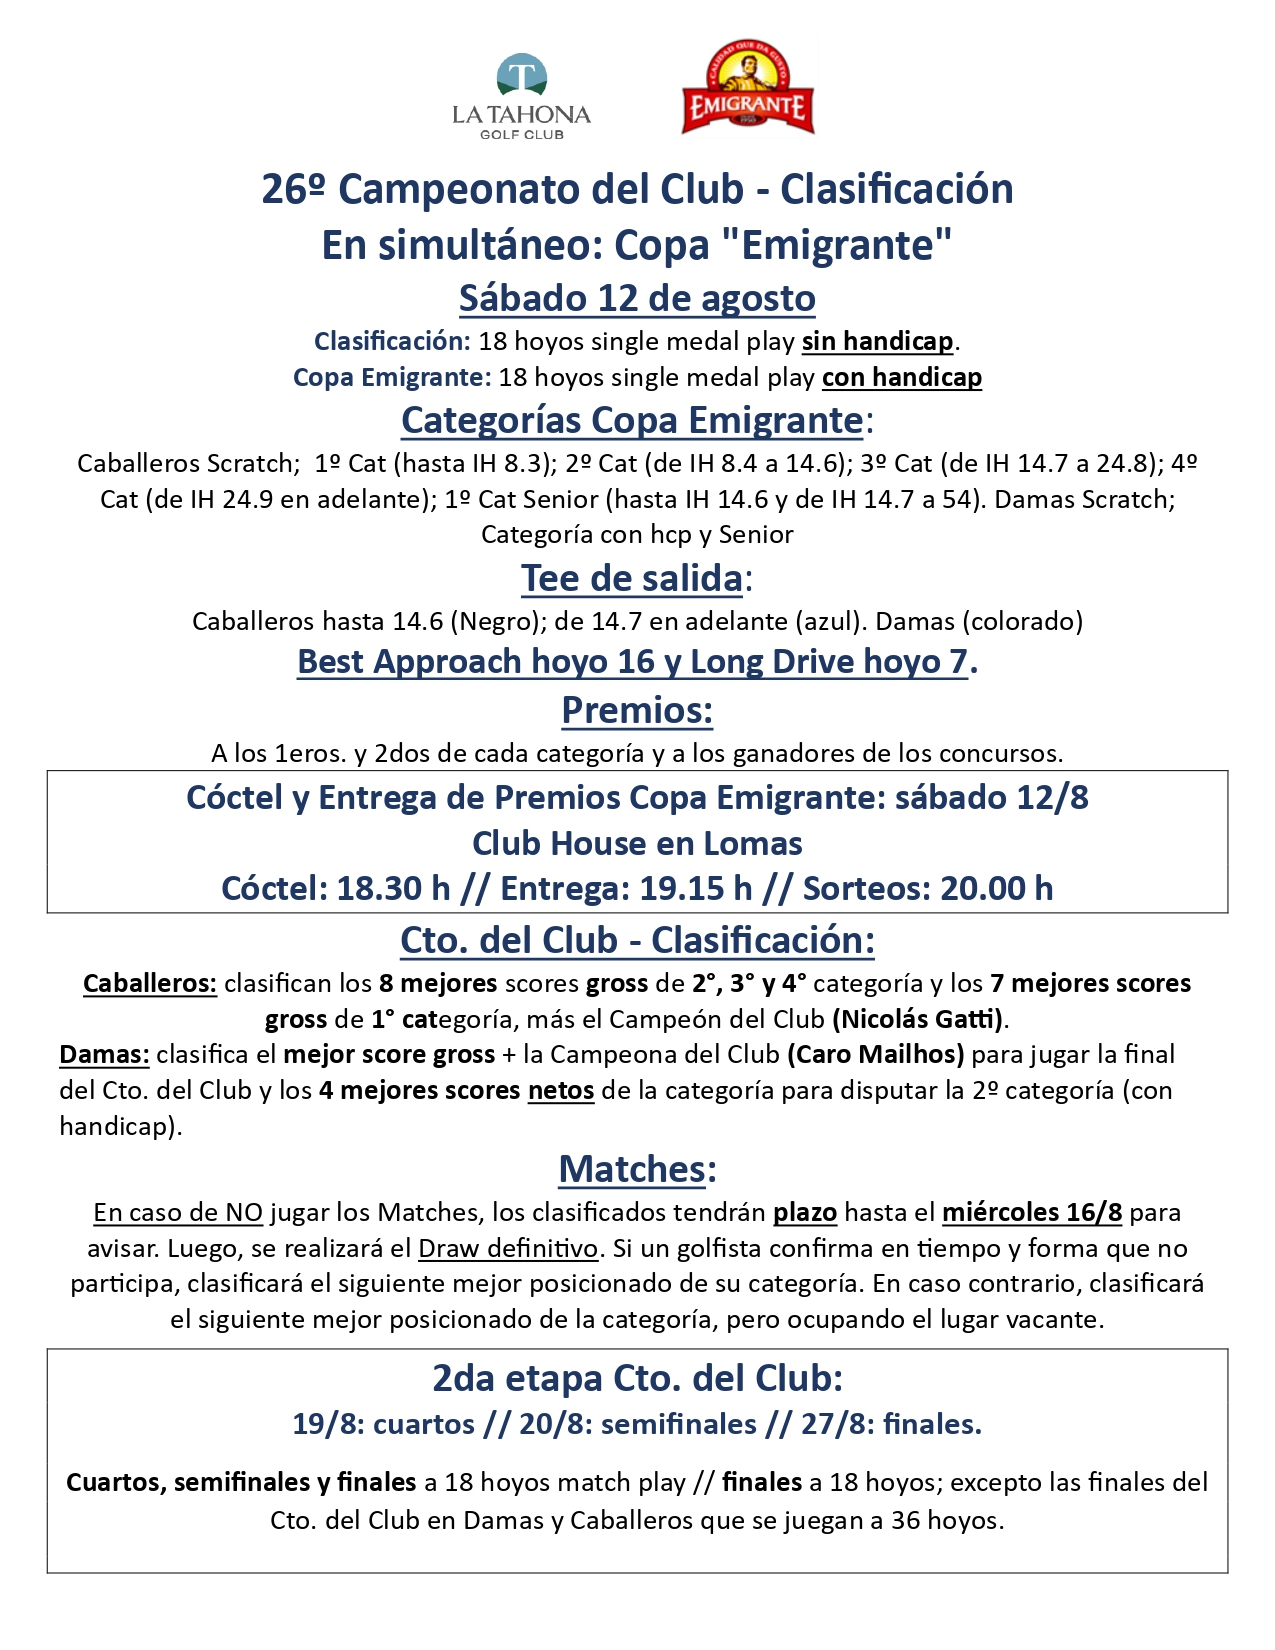 Campeonato del Club Clasificacin y Copa Emigrante _ Condiciones de juego _ Sbado 12/8